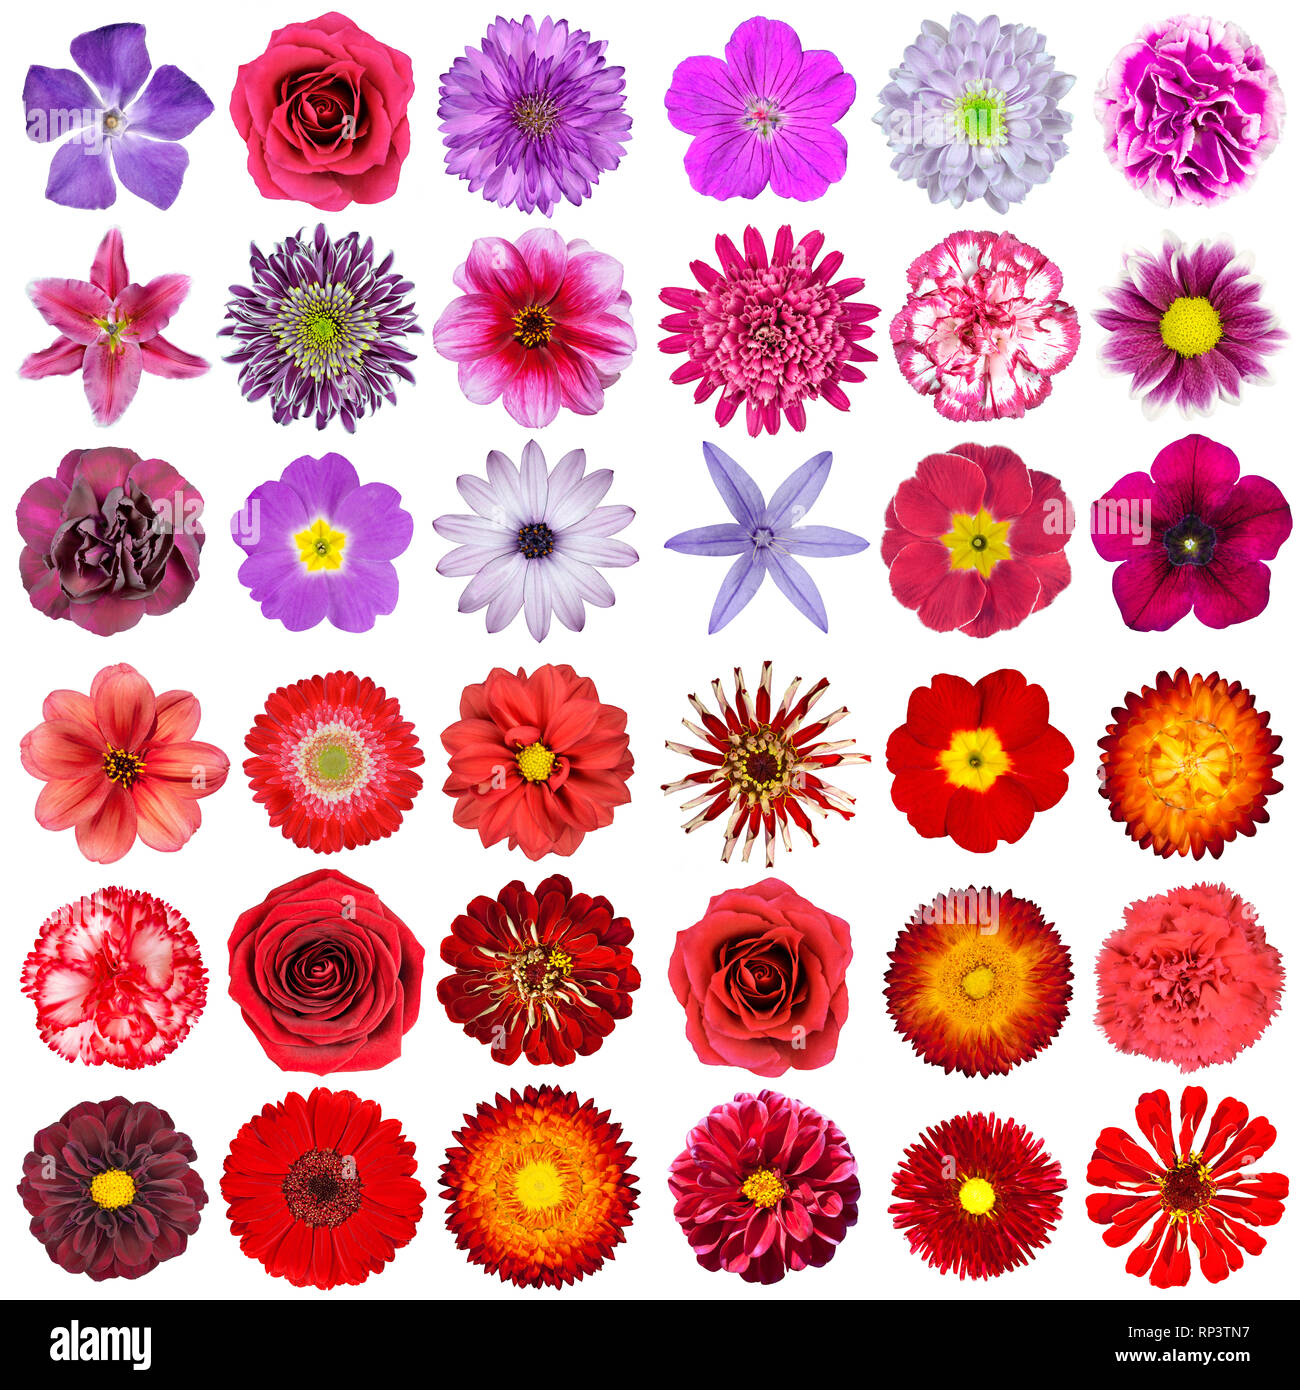 Große Auswahl von verschiedenen Rosa, Violett, Weiß und Rot Blumen isoliert auf weißem Hintergrund. Blumen sind Rose, Dahlie, Ringelblume, zinnia, strawflowe Stockfoto